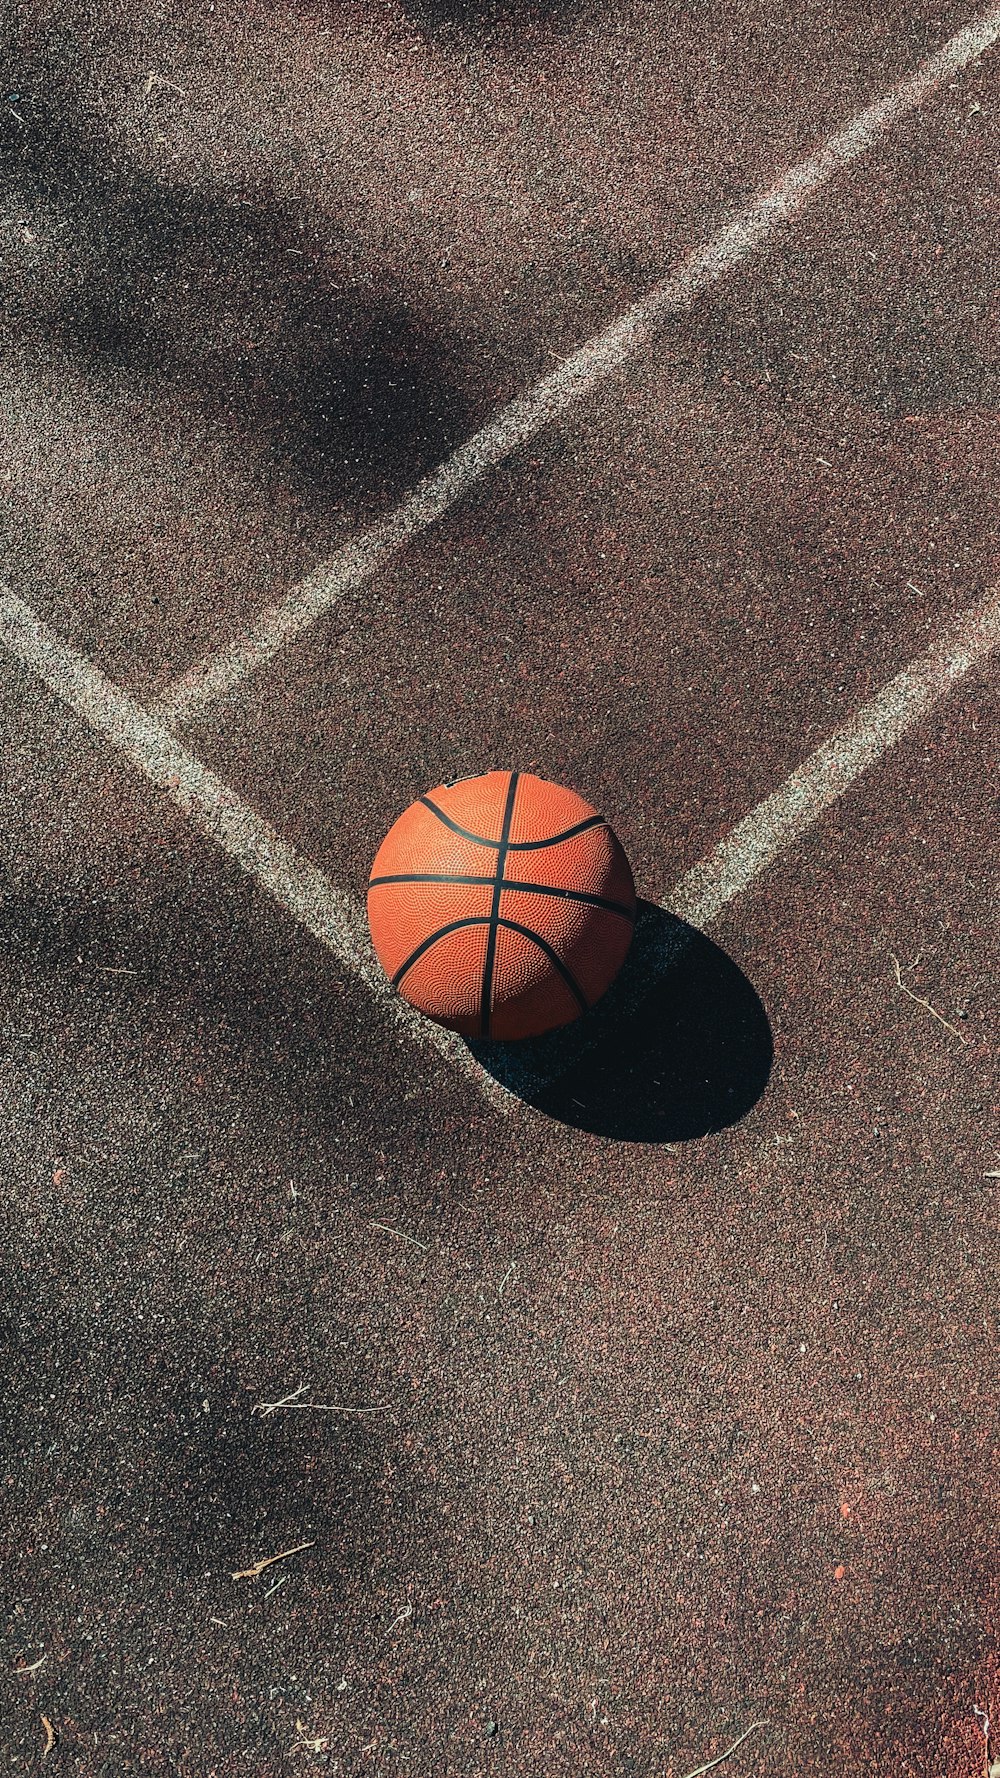 Brauner Basketball auf grauem Betonboden